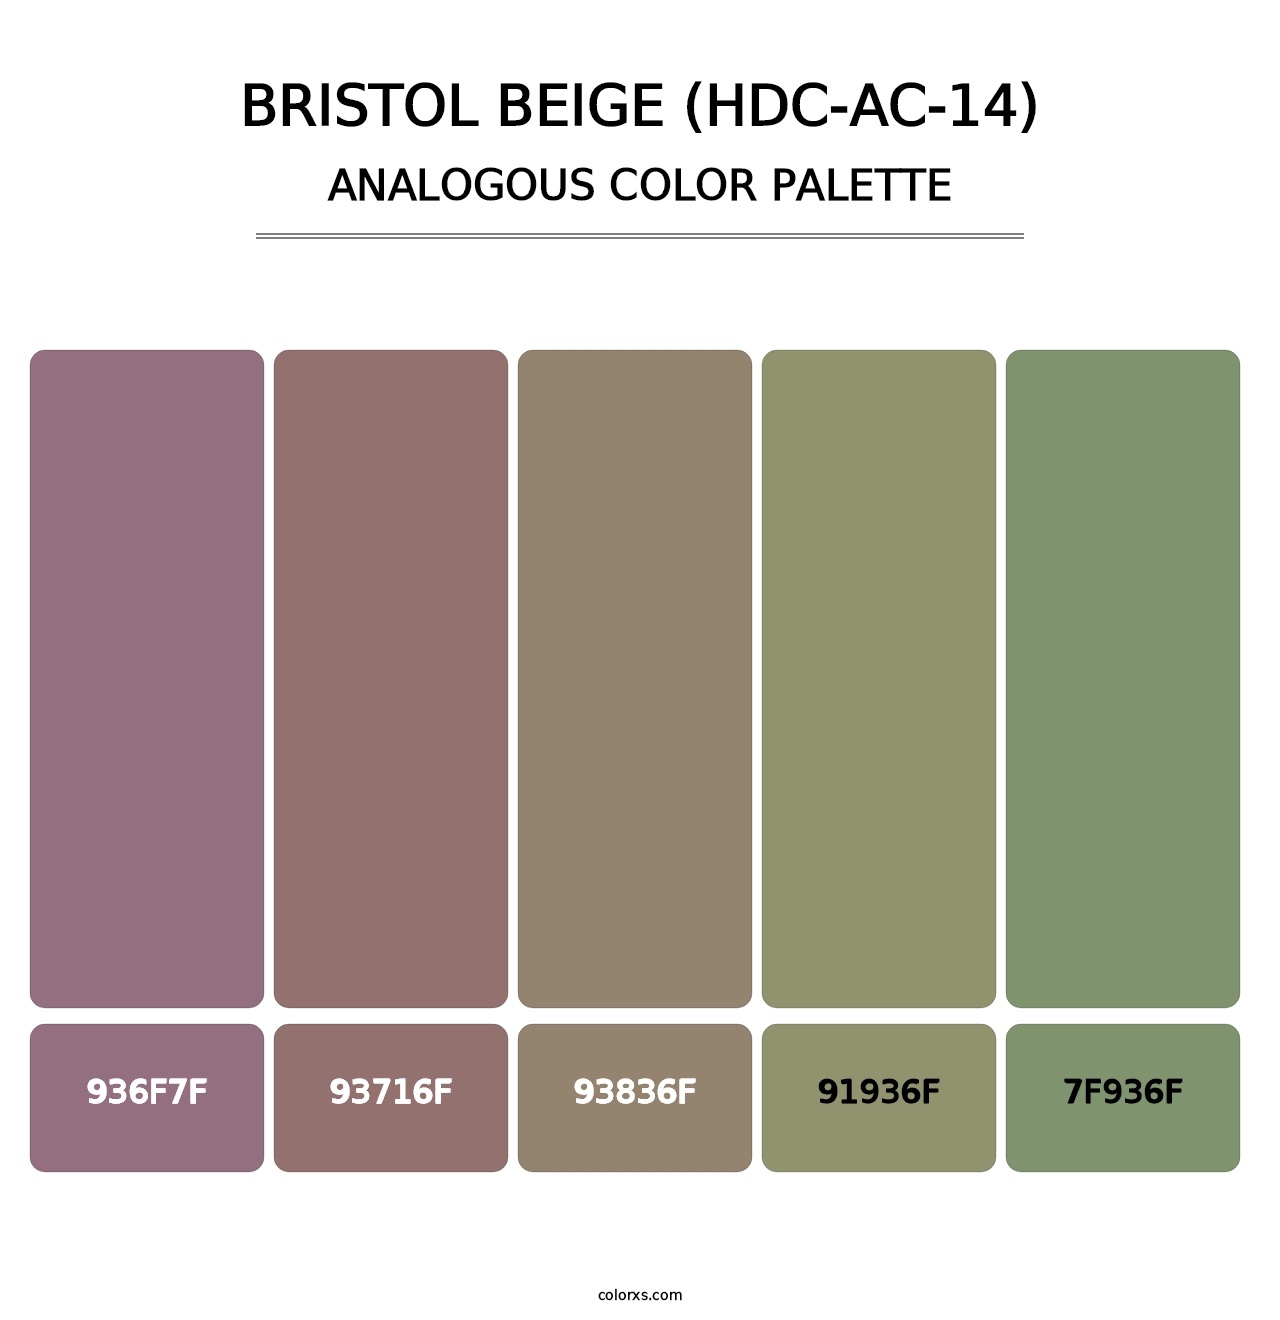 Bristol Beige (HDC-AC-14) - Analogous Color Palette